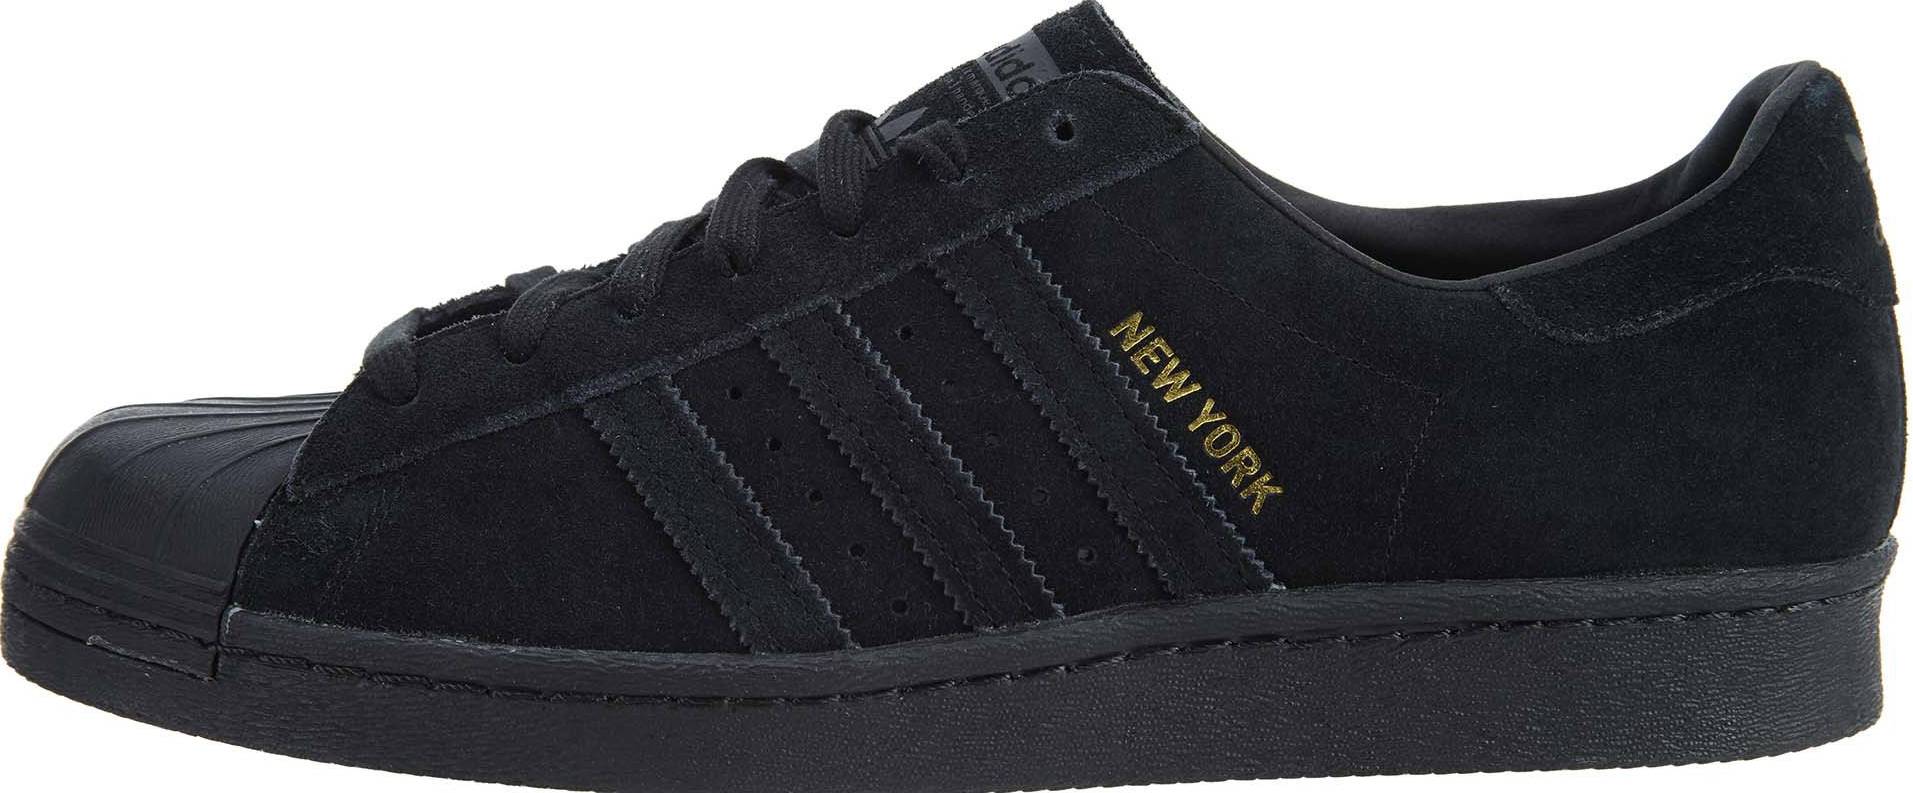 Adidas Superstar 80s City Series sneakers in black | RunRepeat